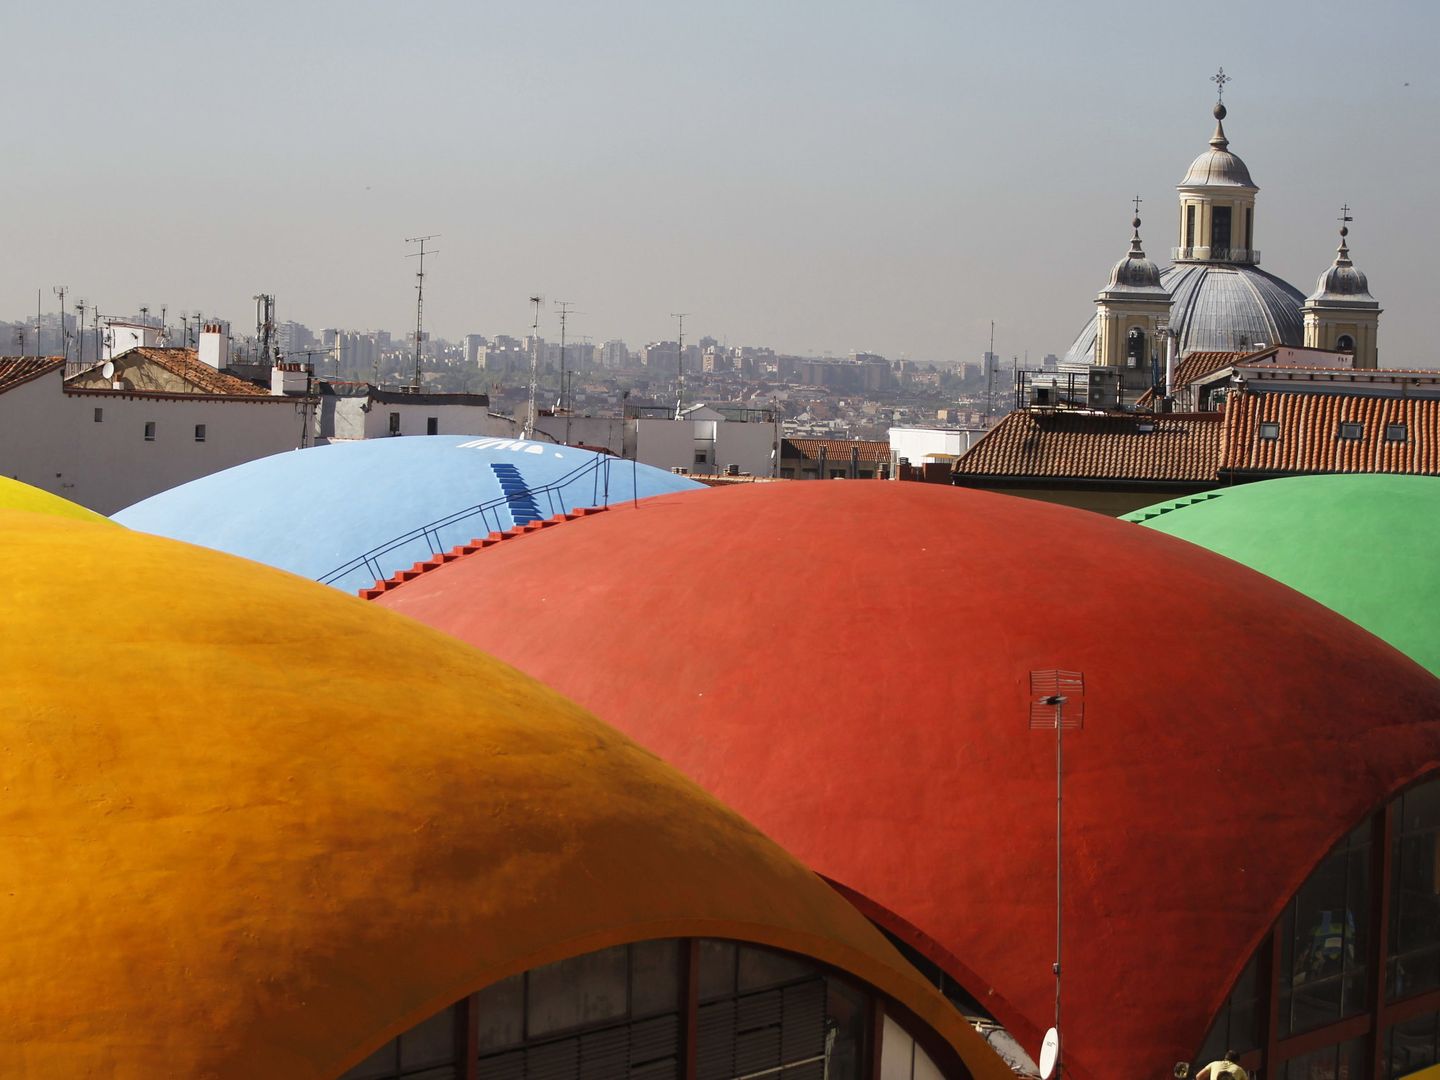 Vista del Mercado de la Cebada con el mural de casi 6.000 metros cuadrados realizado en 2013 por el grupo artístico Boamistura. (Fernando Alvarado/EFE)